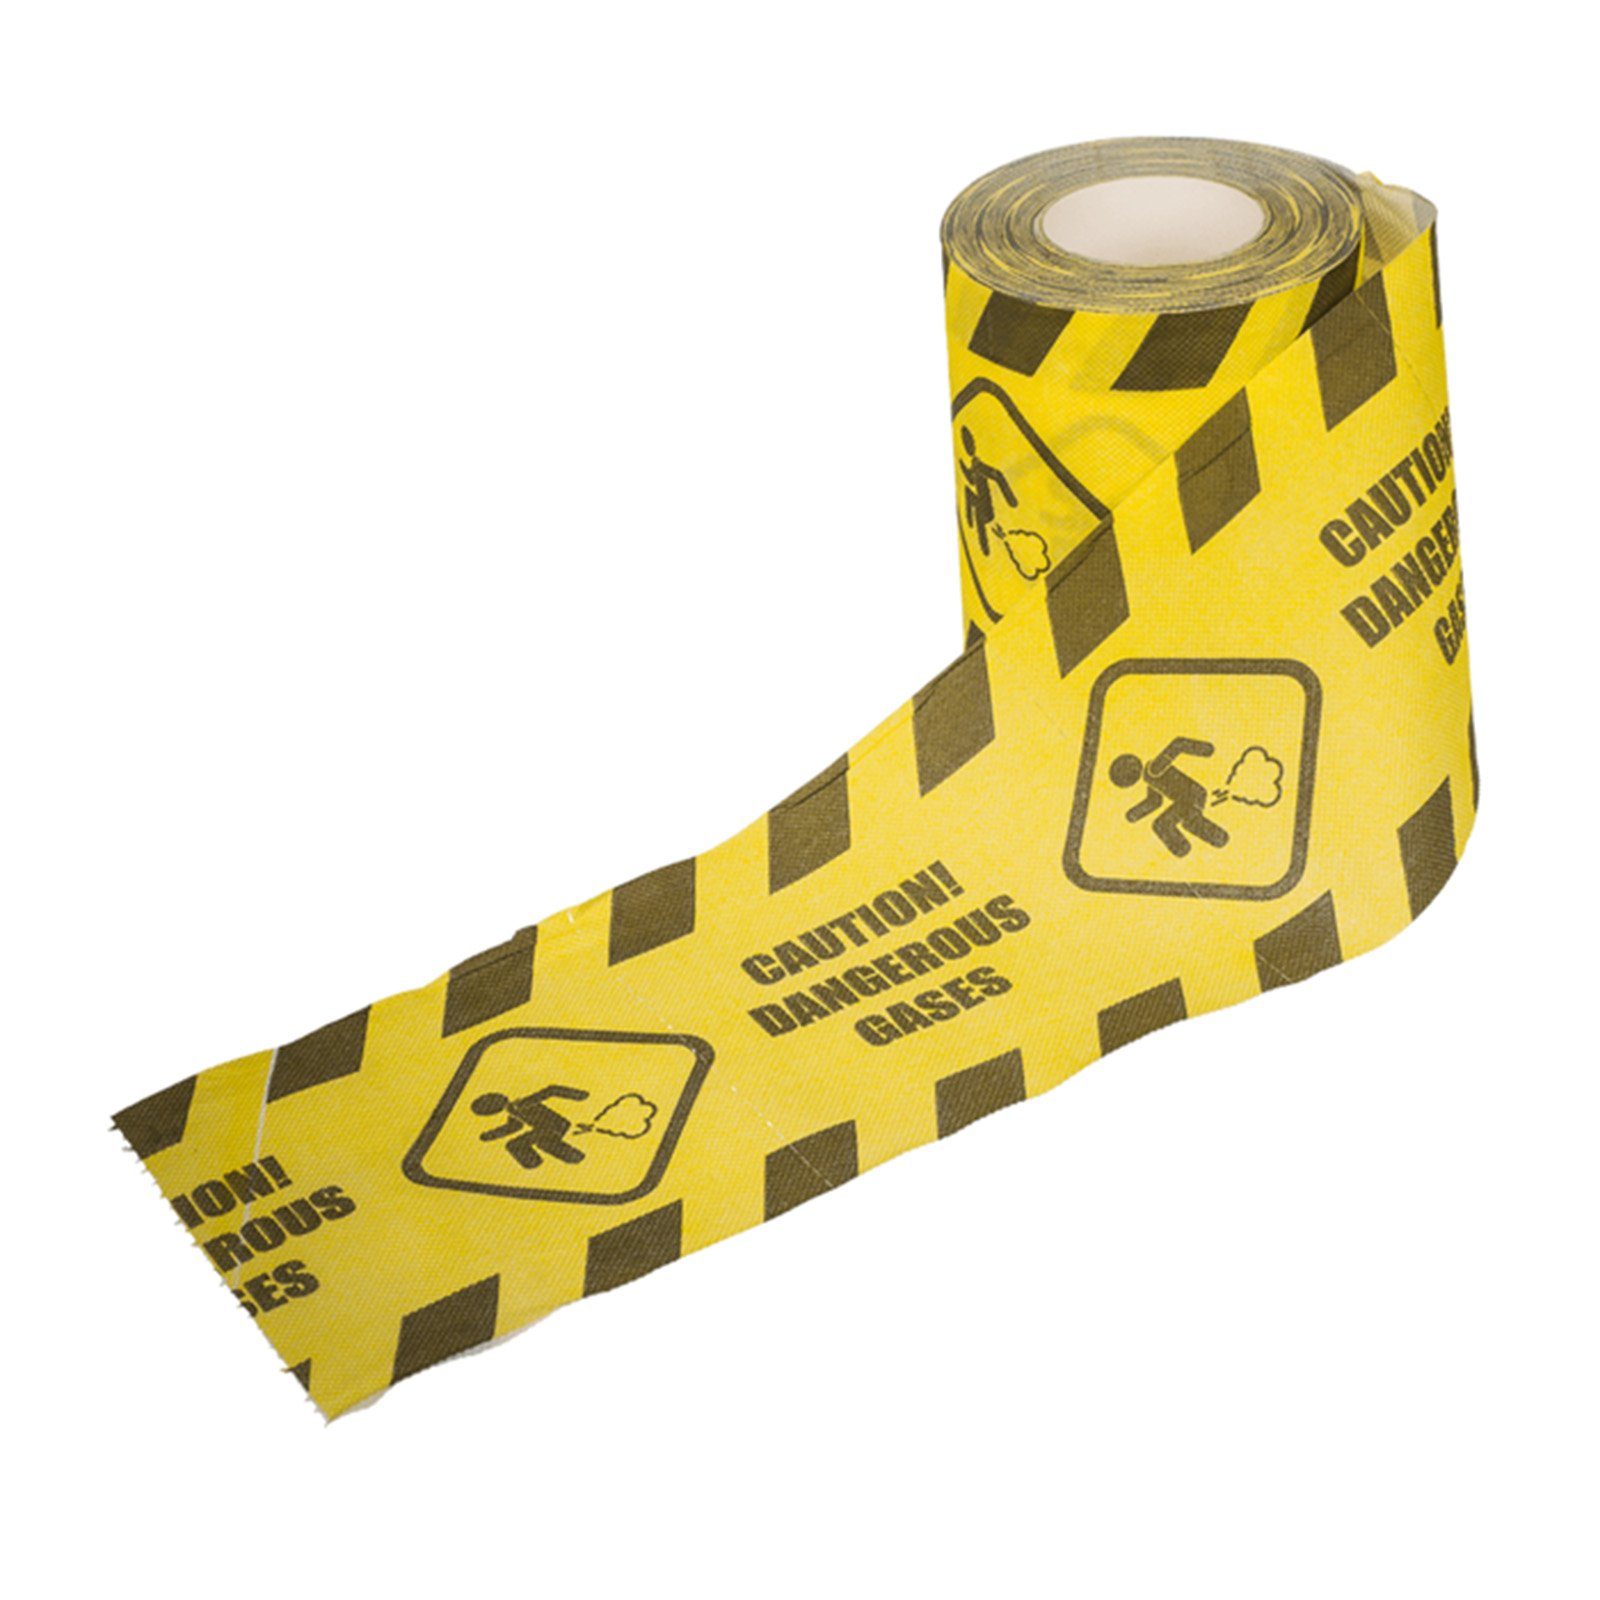 Out of the Blue Papierdekoration Toilettenpapier Caution Dangerous Gases mit Furz Piktrogramm | Partydekoration